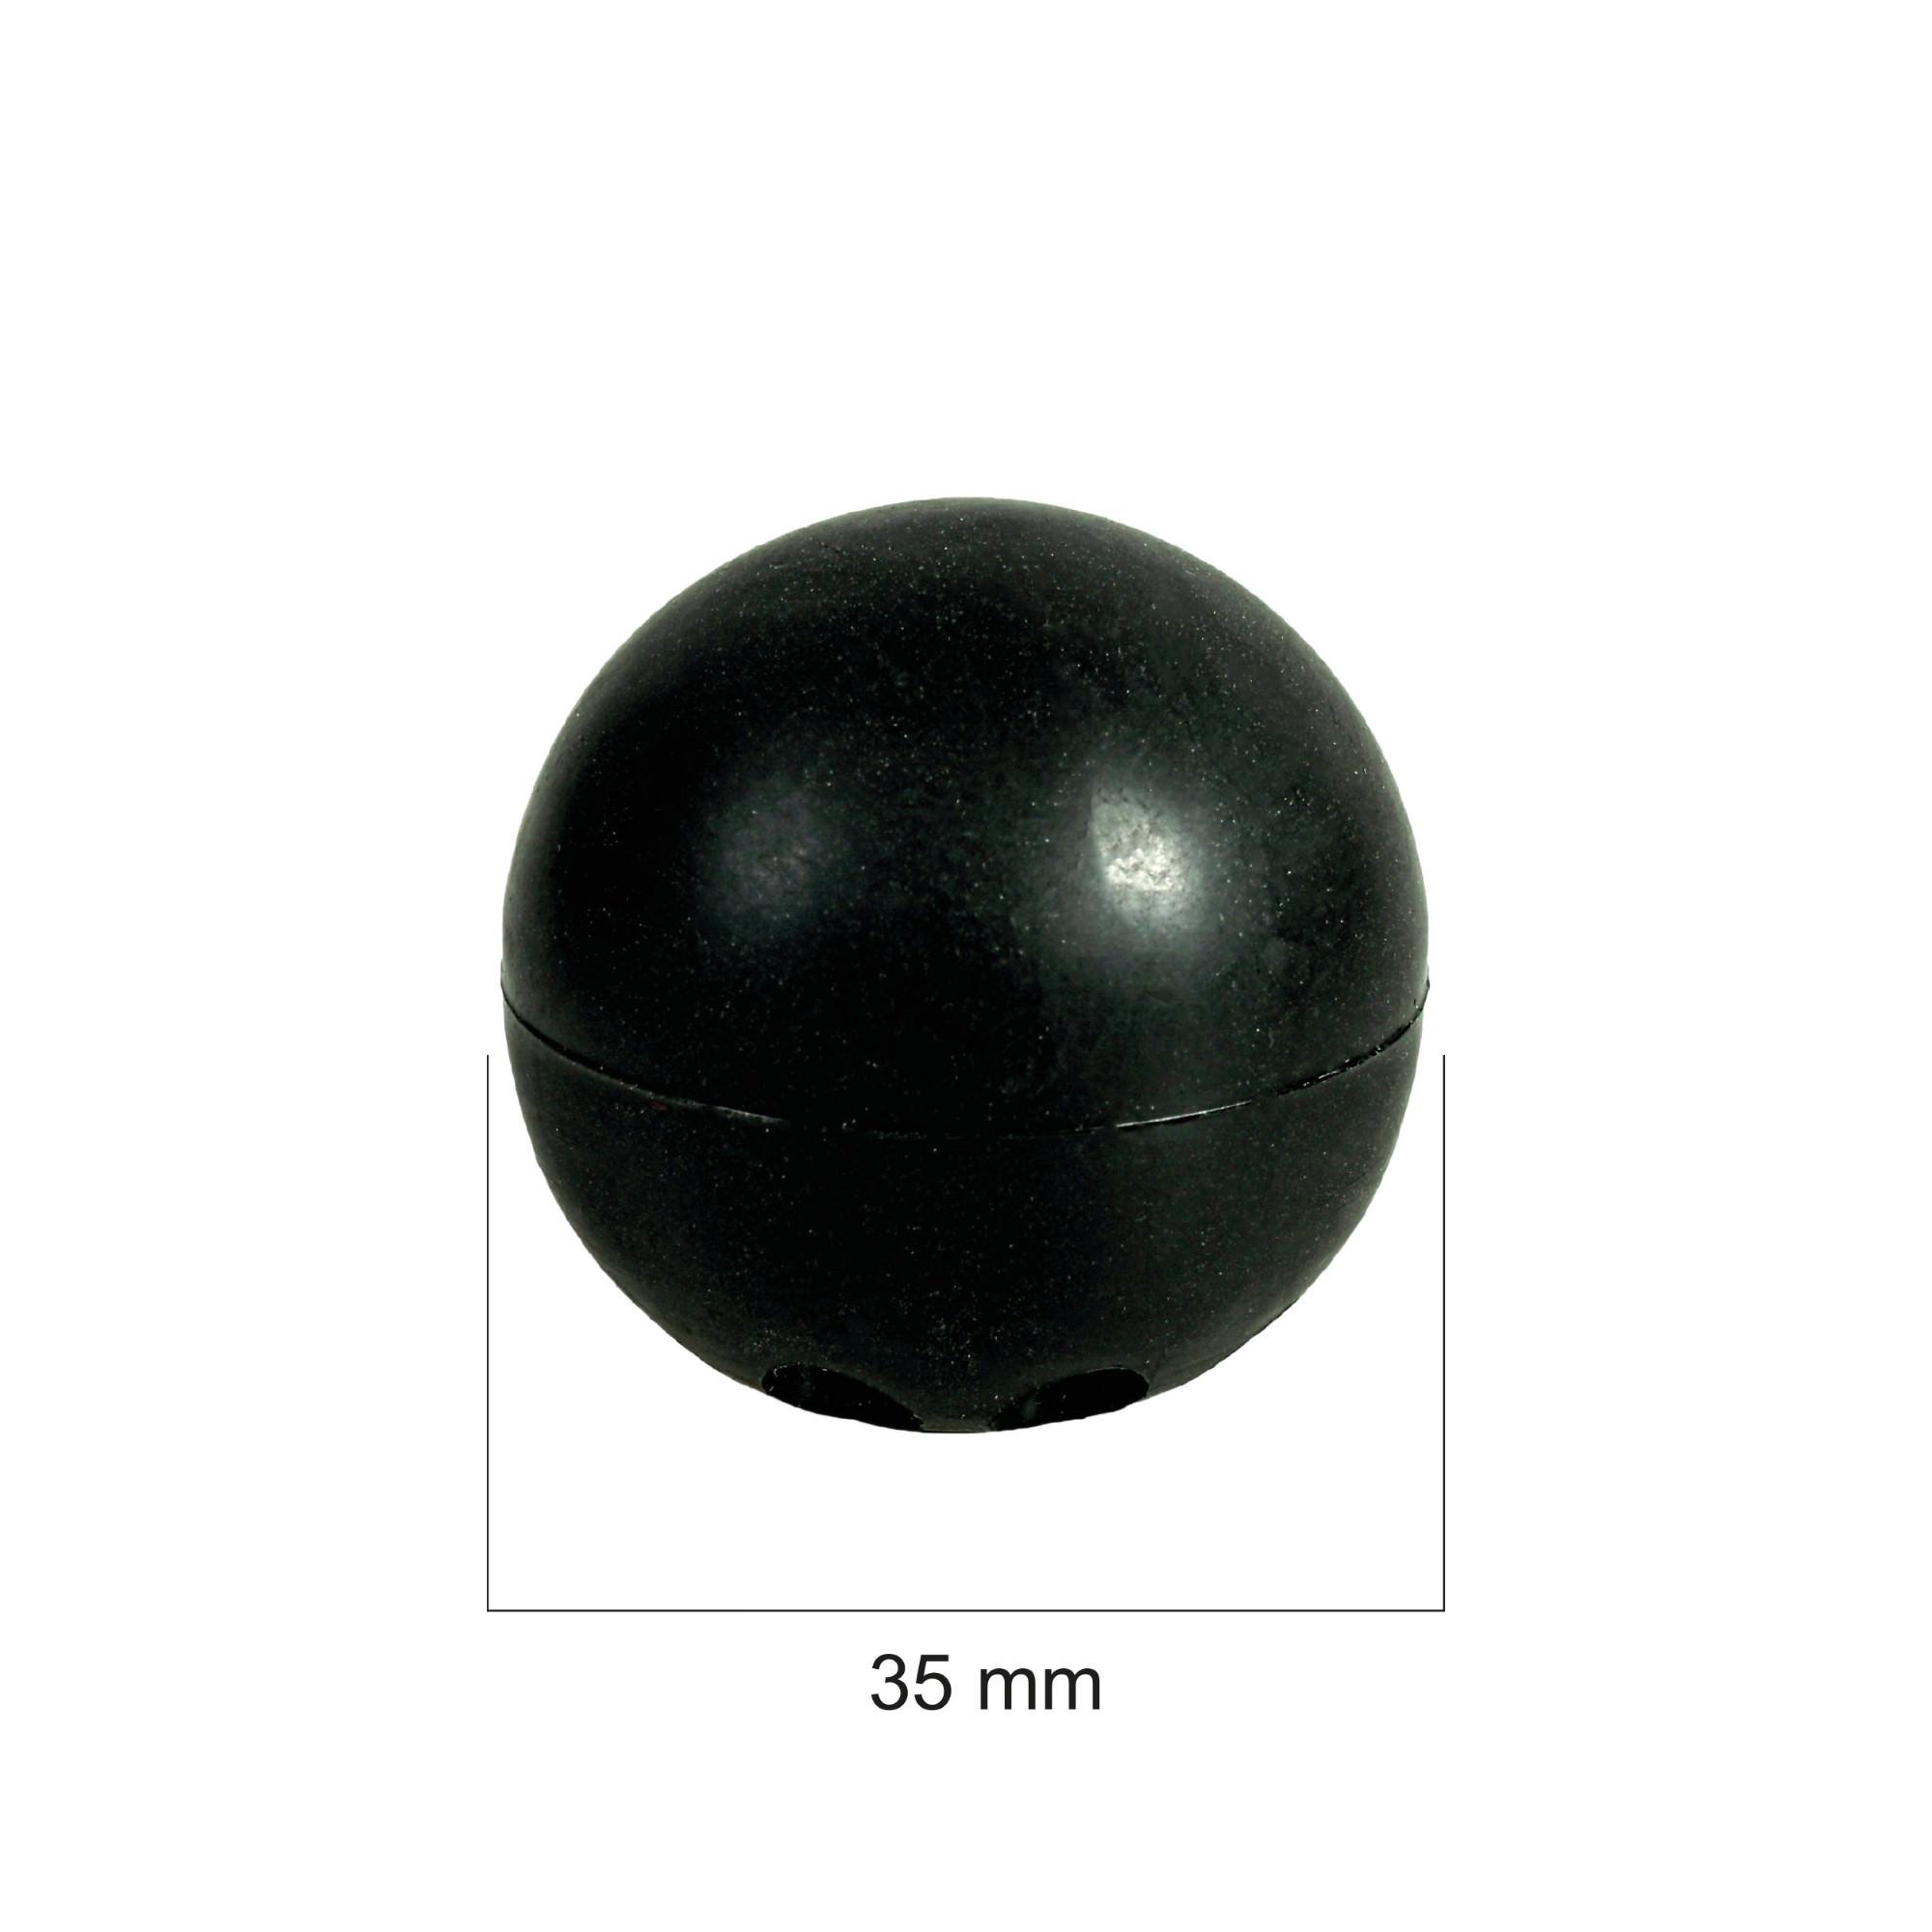 cms odbojniki scienne Odboje Kula odb kula C1 wym Rysunek16 48.jpg Odbój drzwiowy 35 mm kula czarny